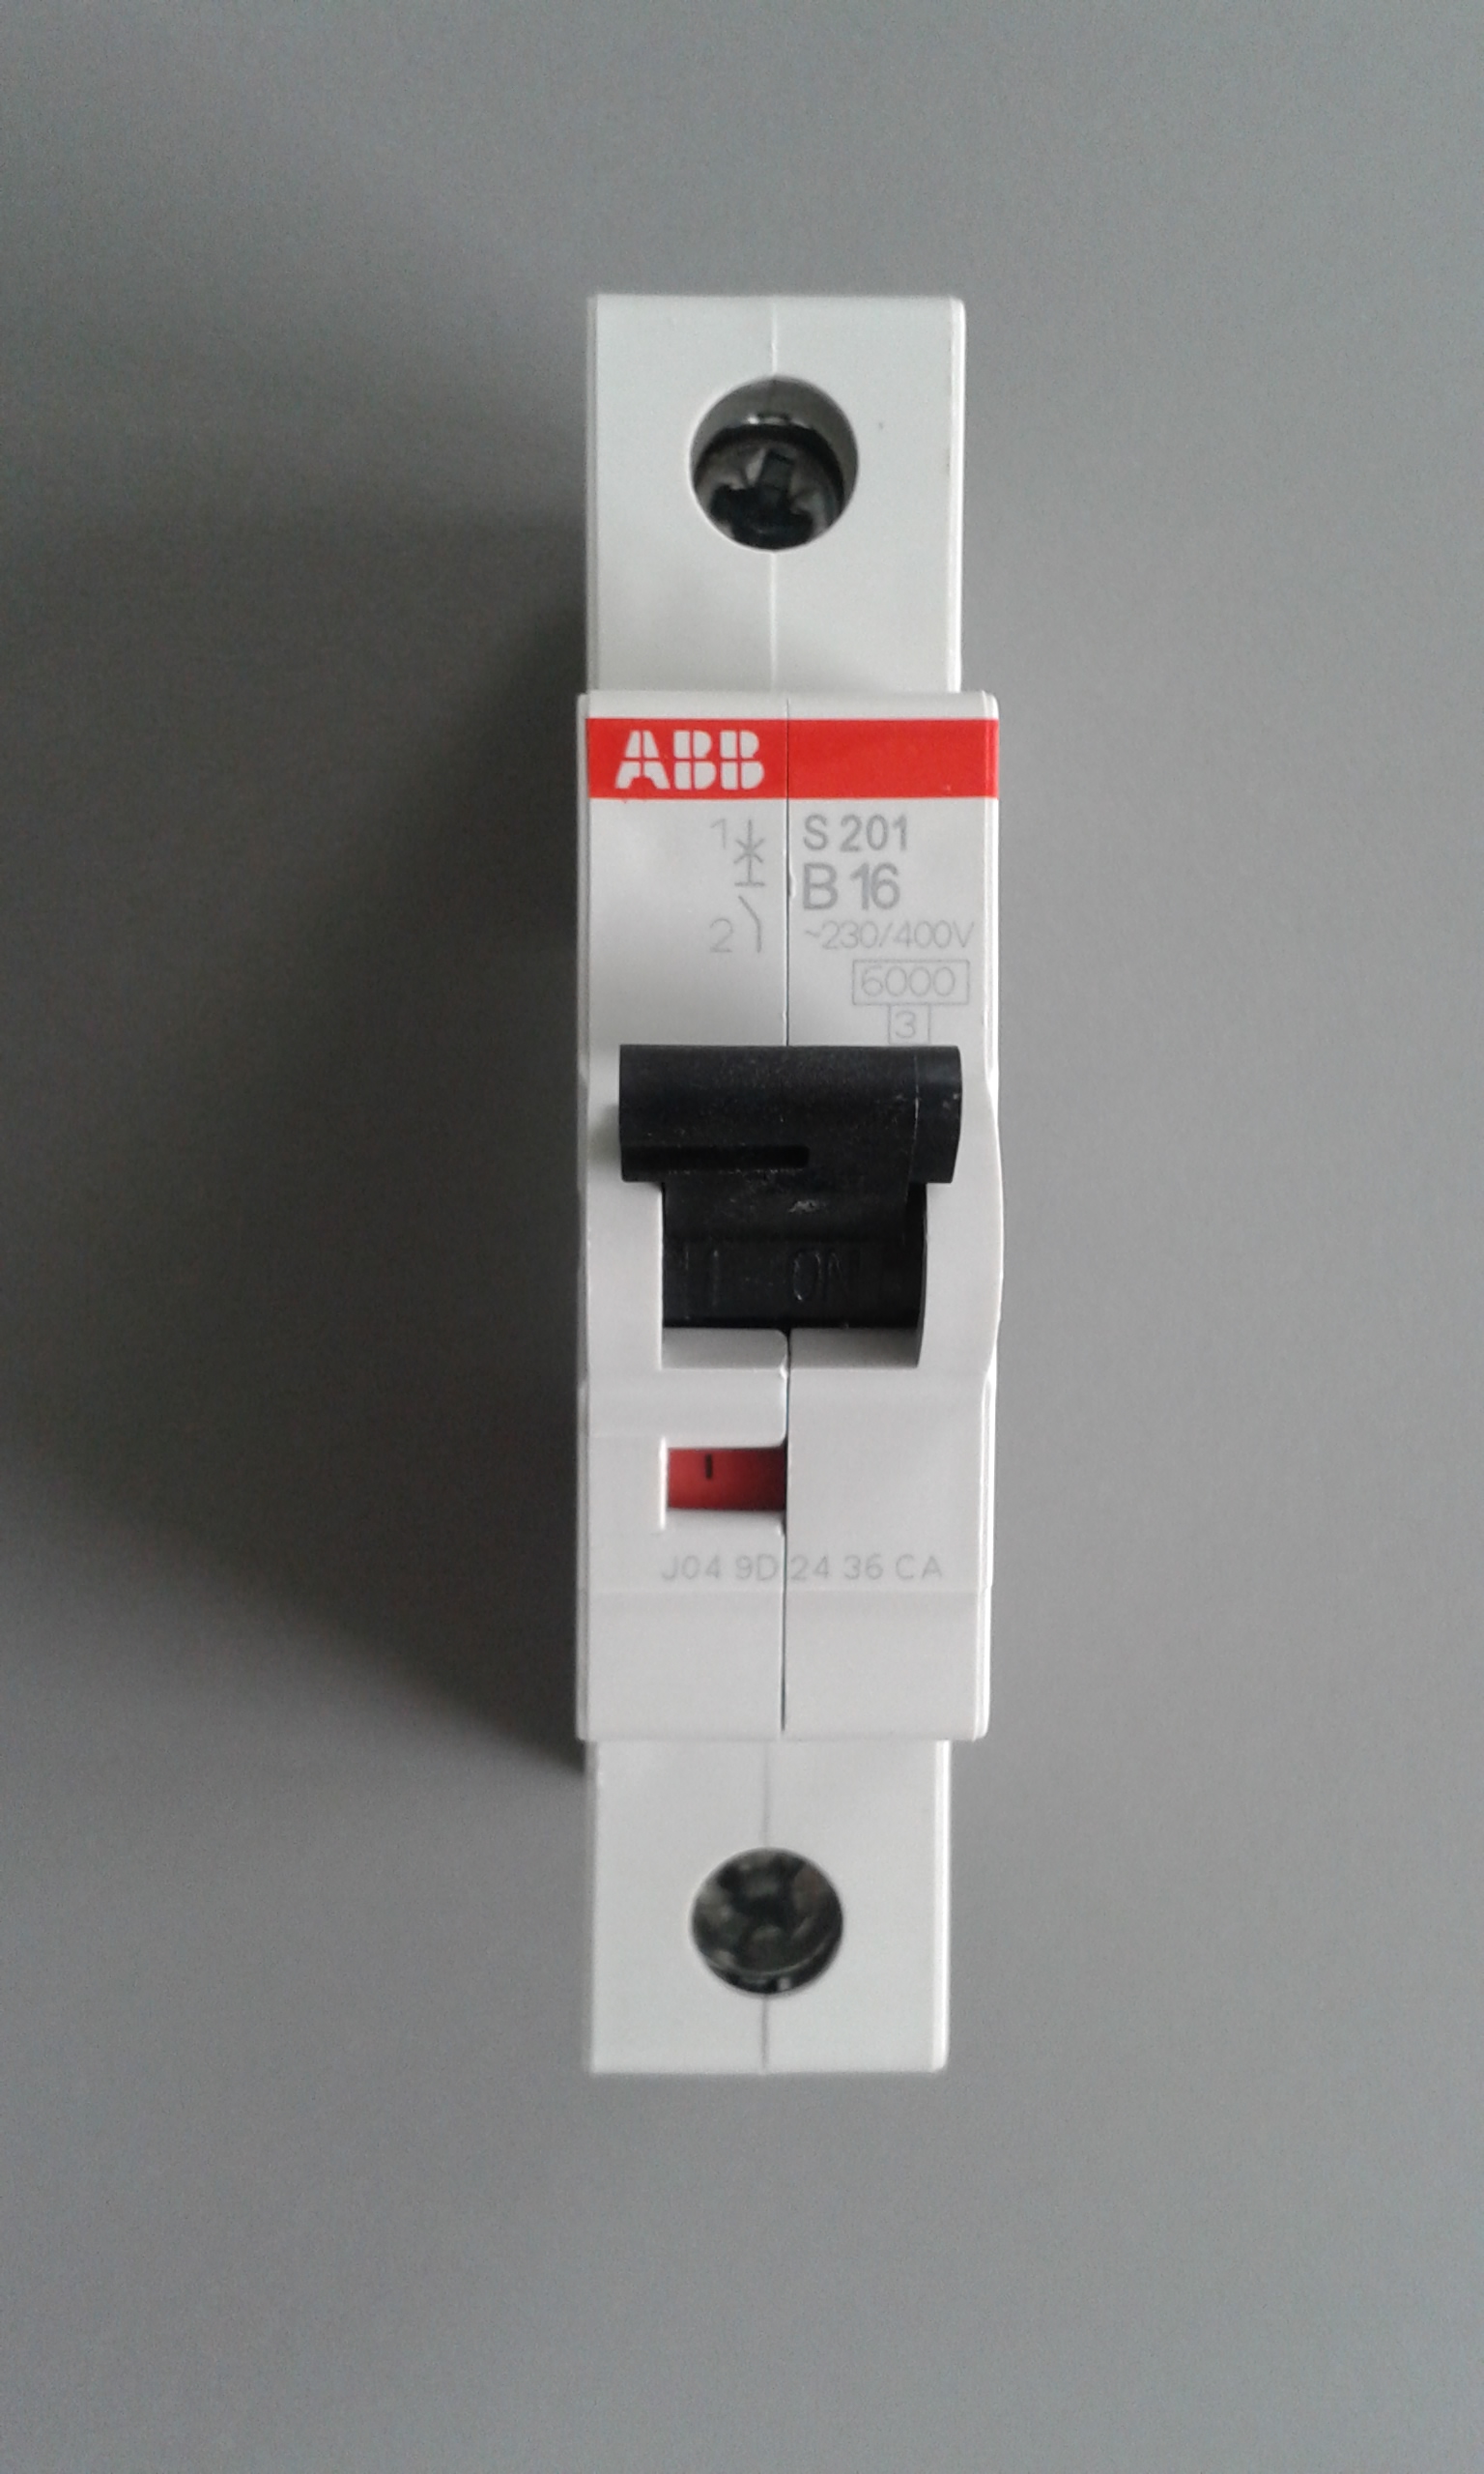 Однополюсный выключатель купить. ABB s201 c16. Автоматический выключатель ABB s201. Автоматический выключатель ABB c16. Автомат ABB 16a однополюсный.